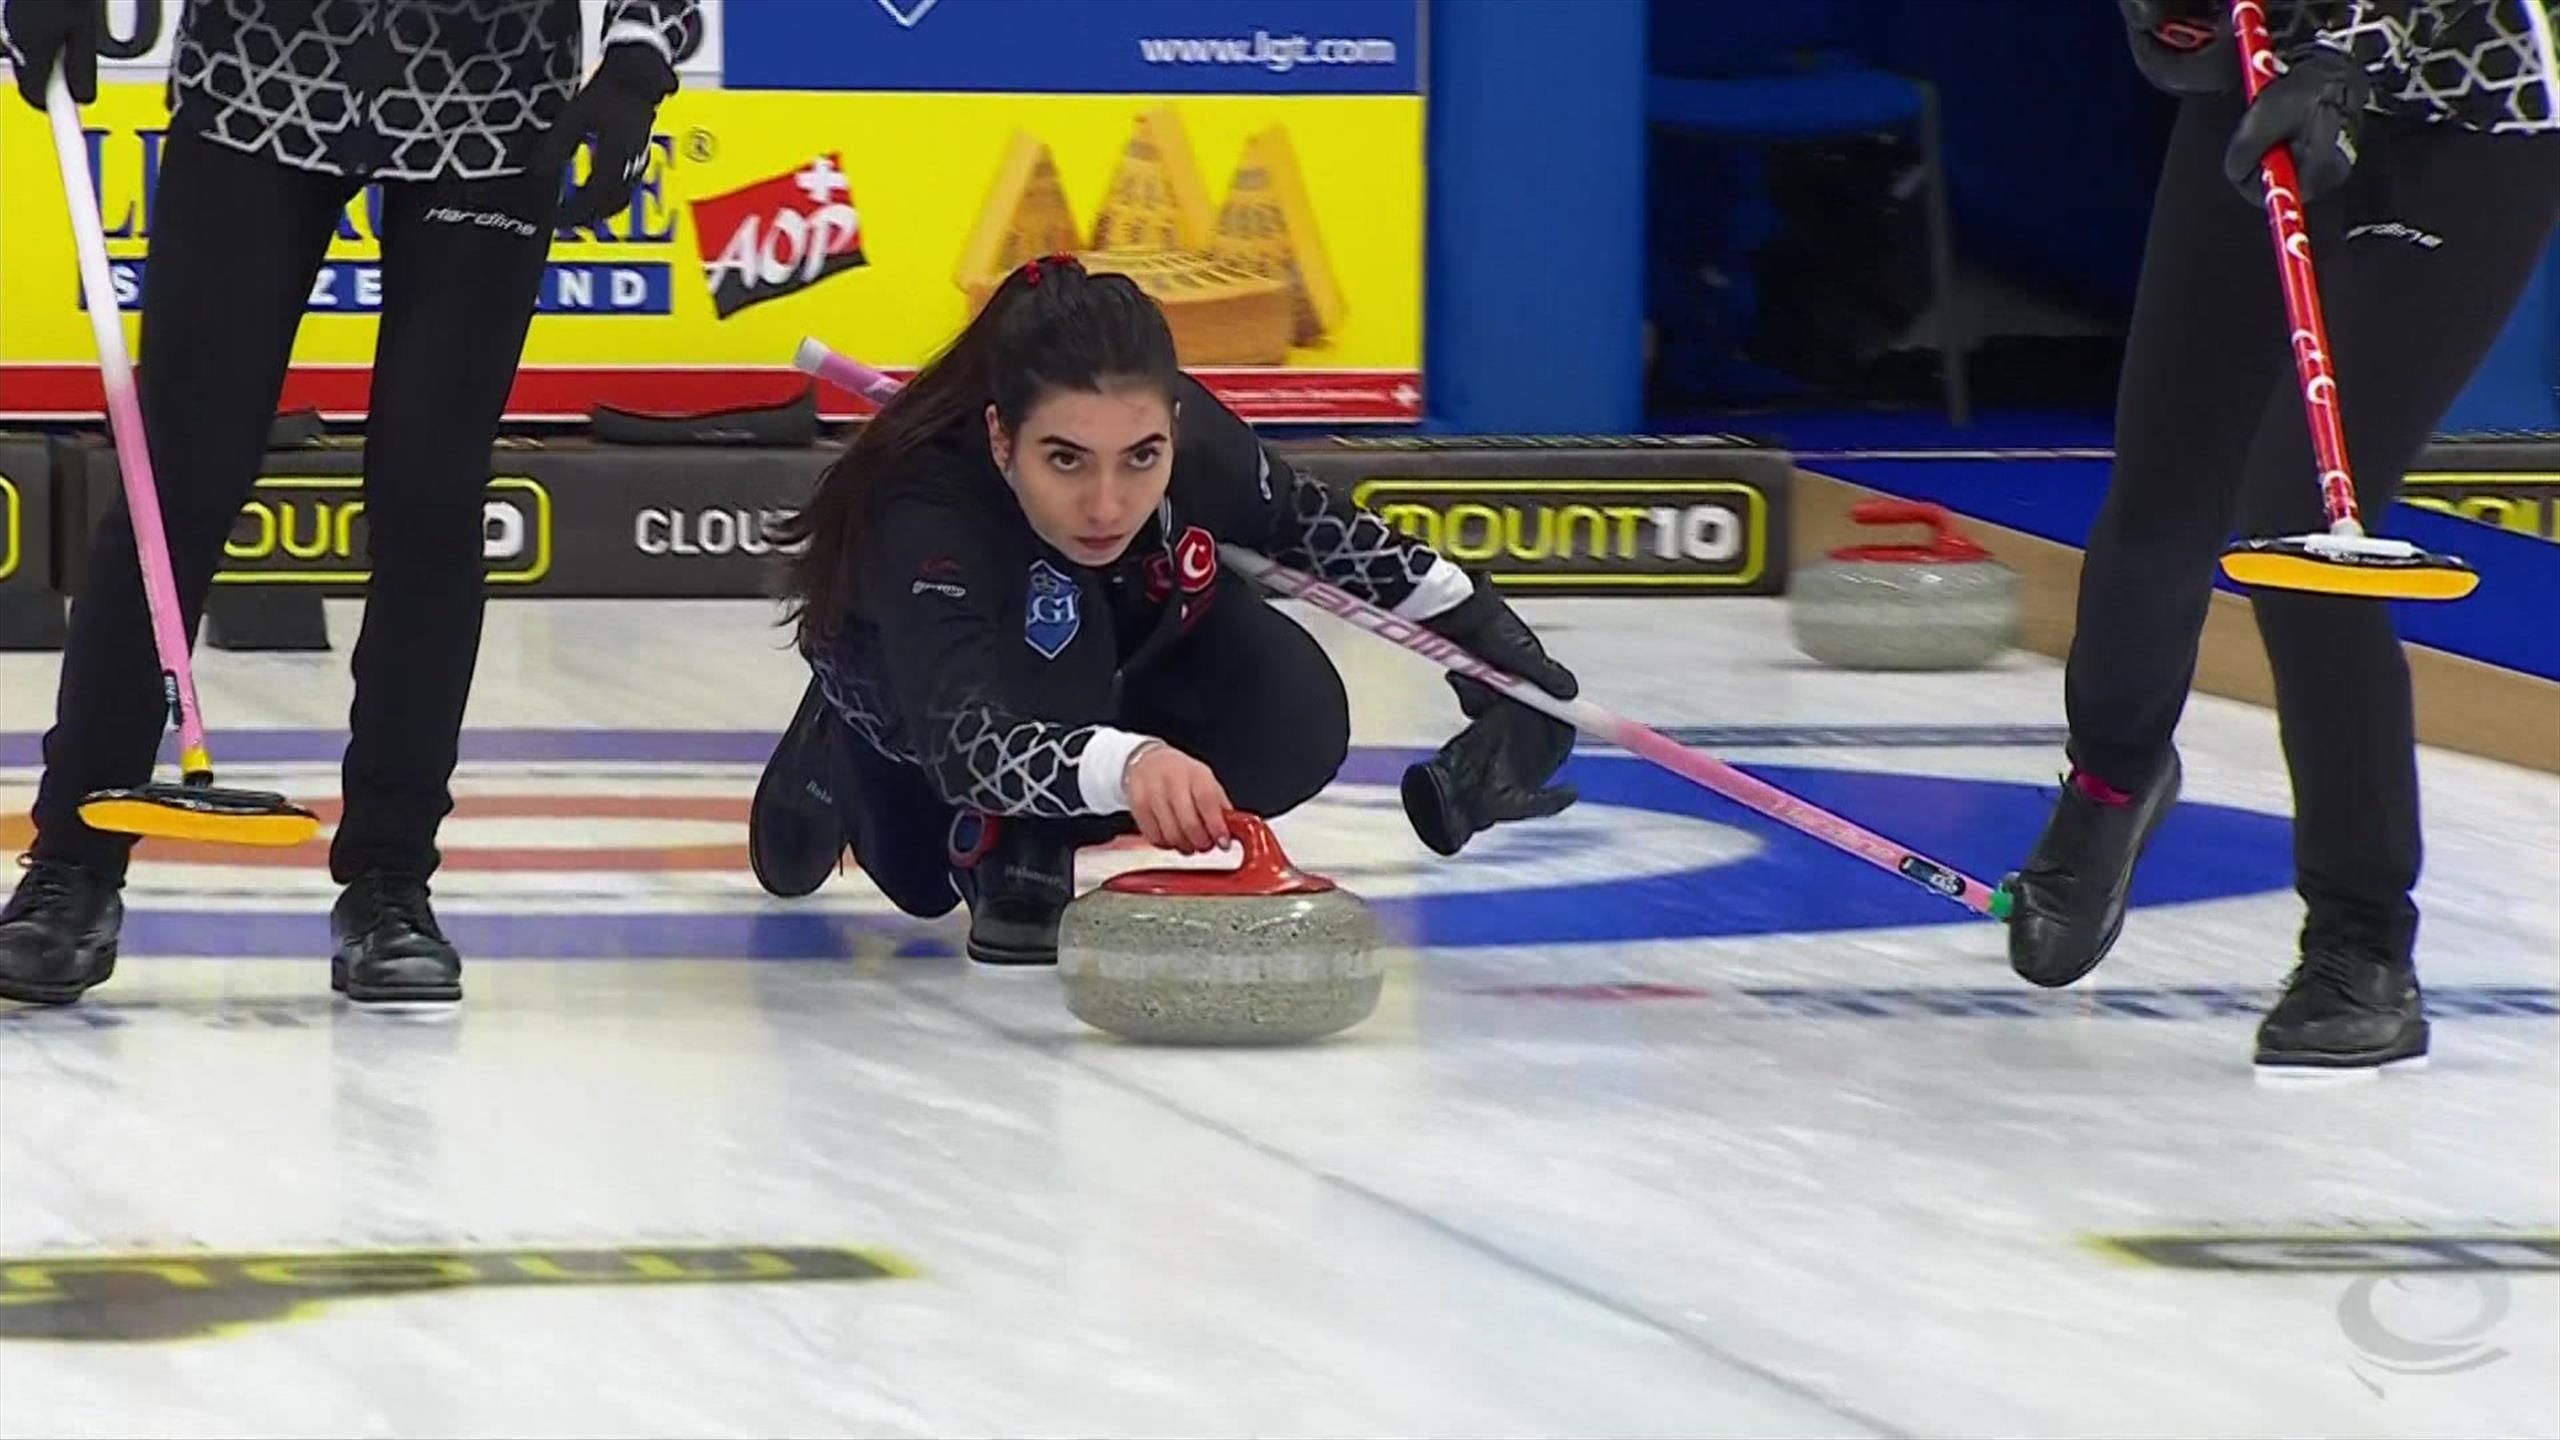 Deutschland unterliegt Türkei bei Curling-EM im fünften Gruppenspiel - Curling Video